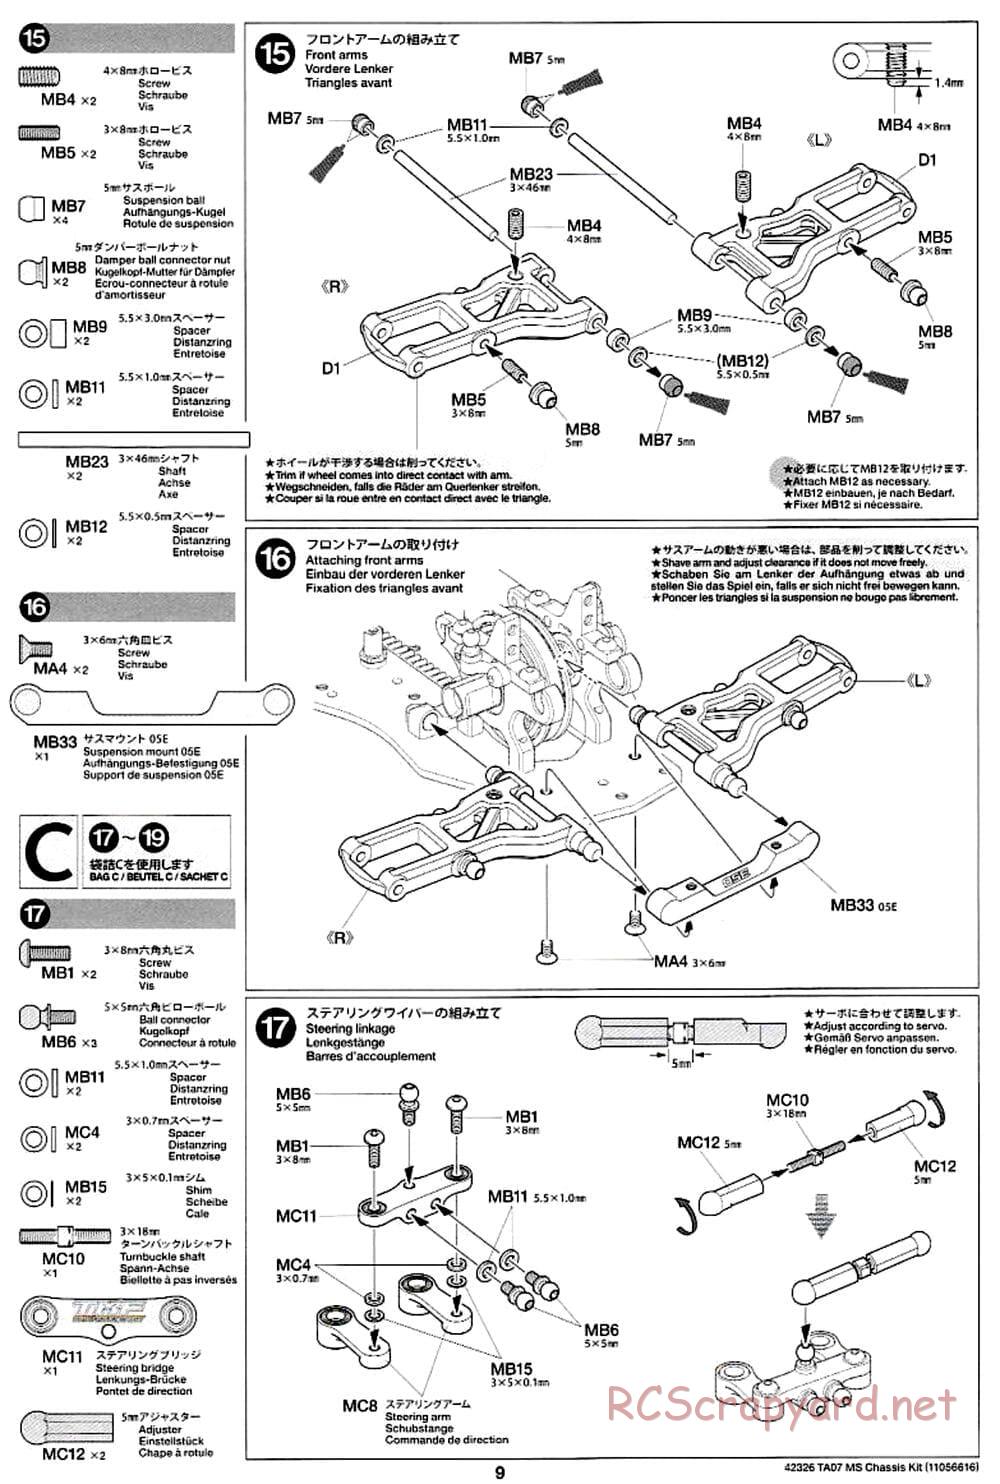 Tamiya - TA07 MS Chassis - Manual - Page 9